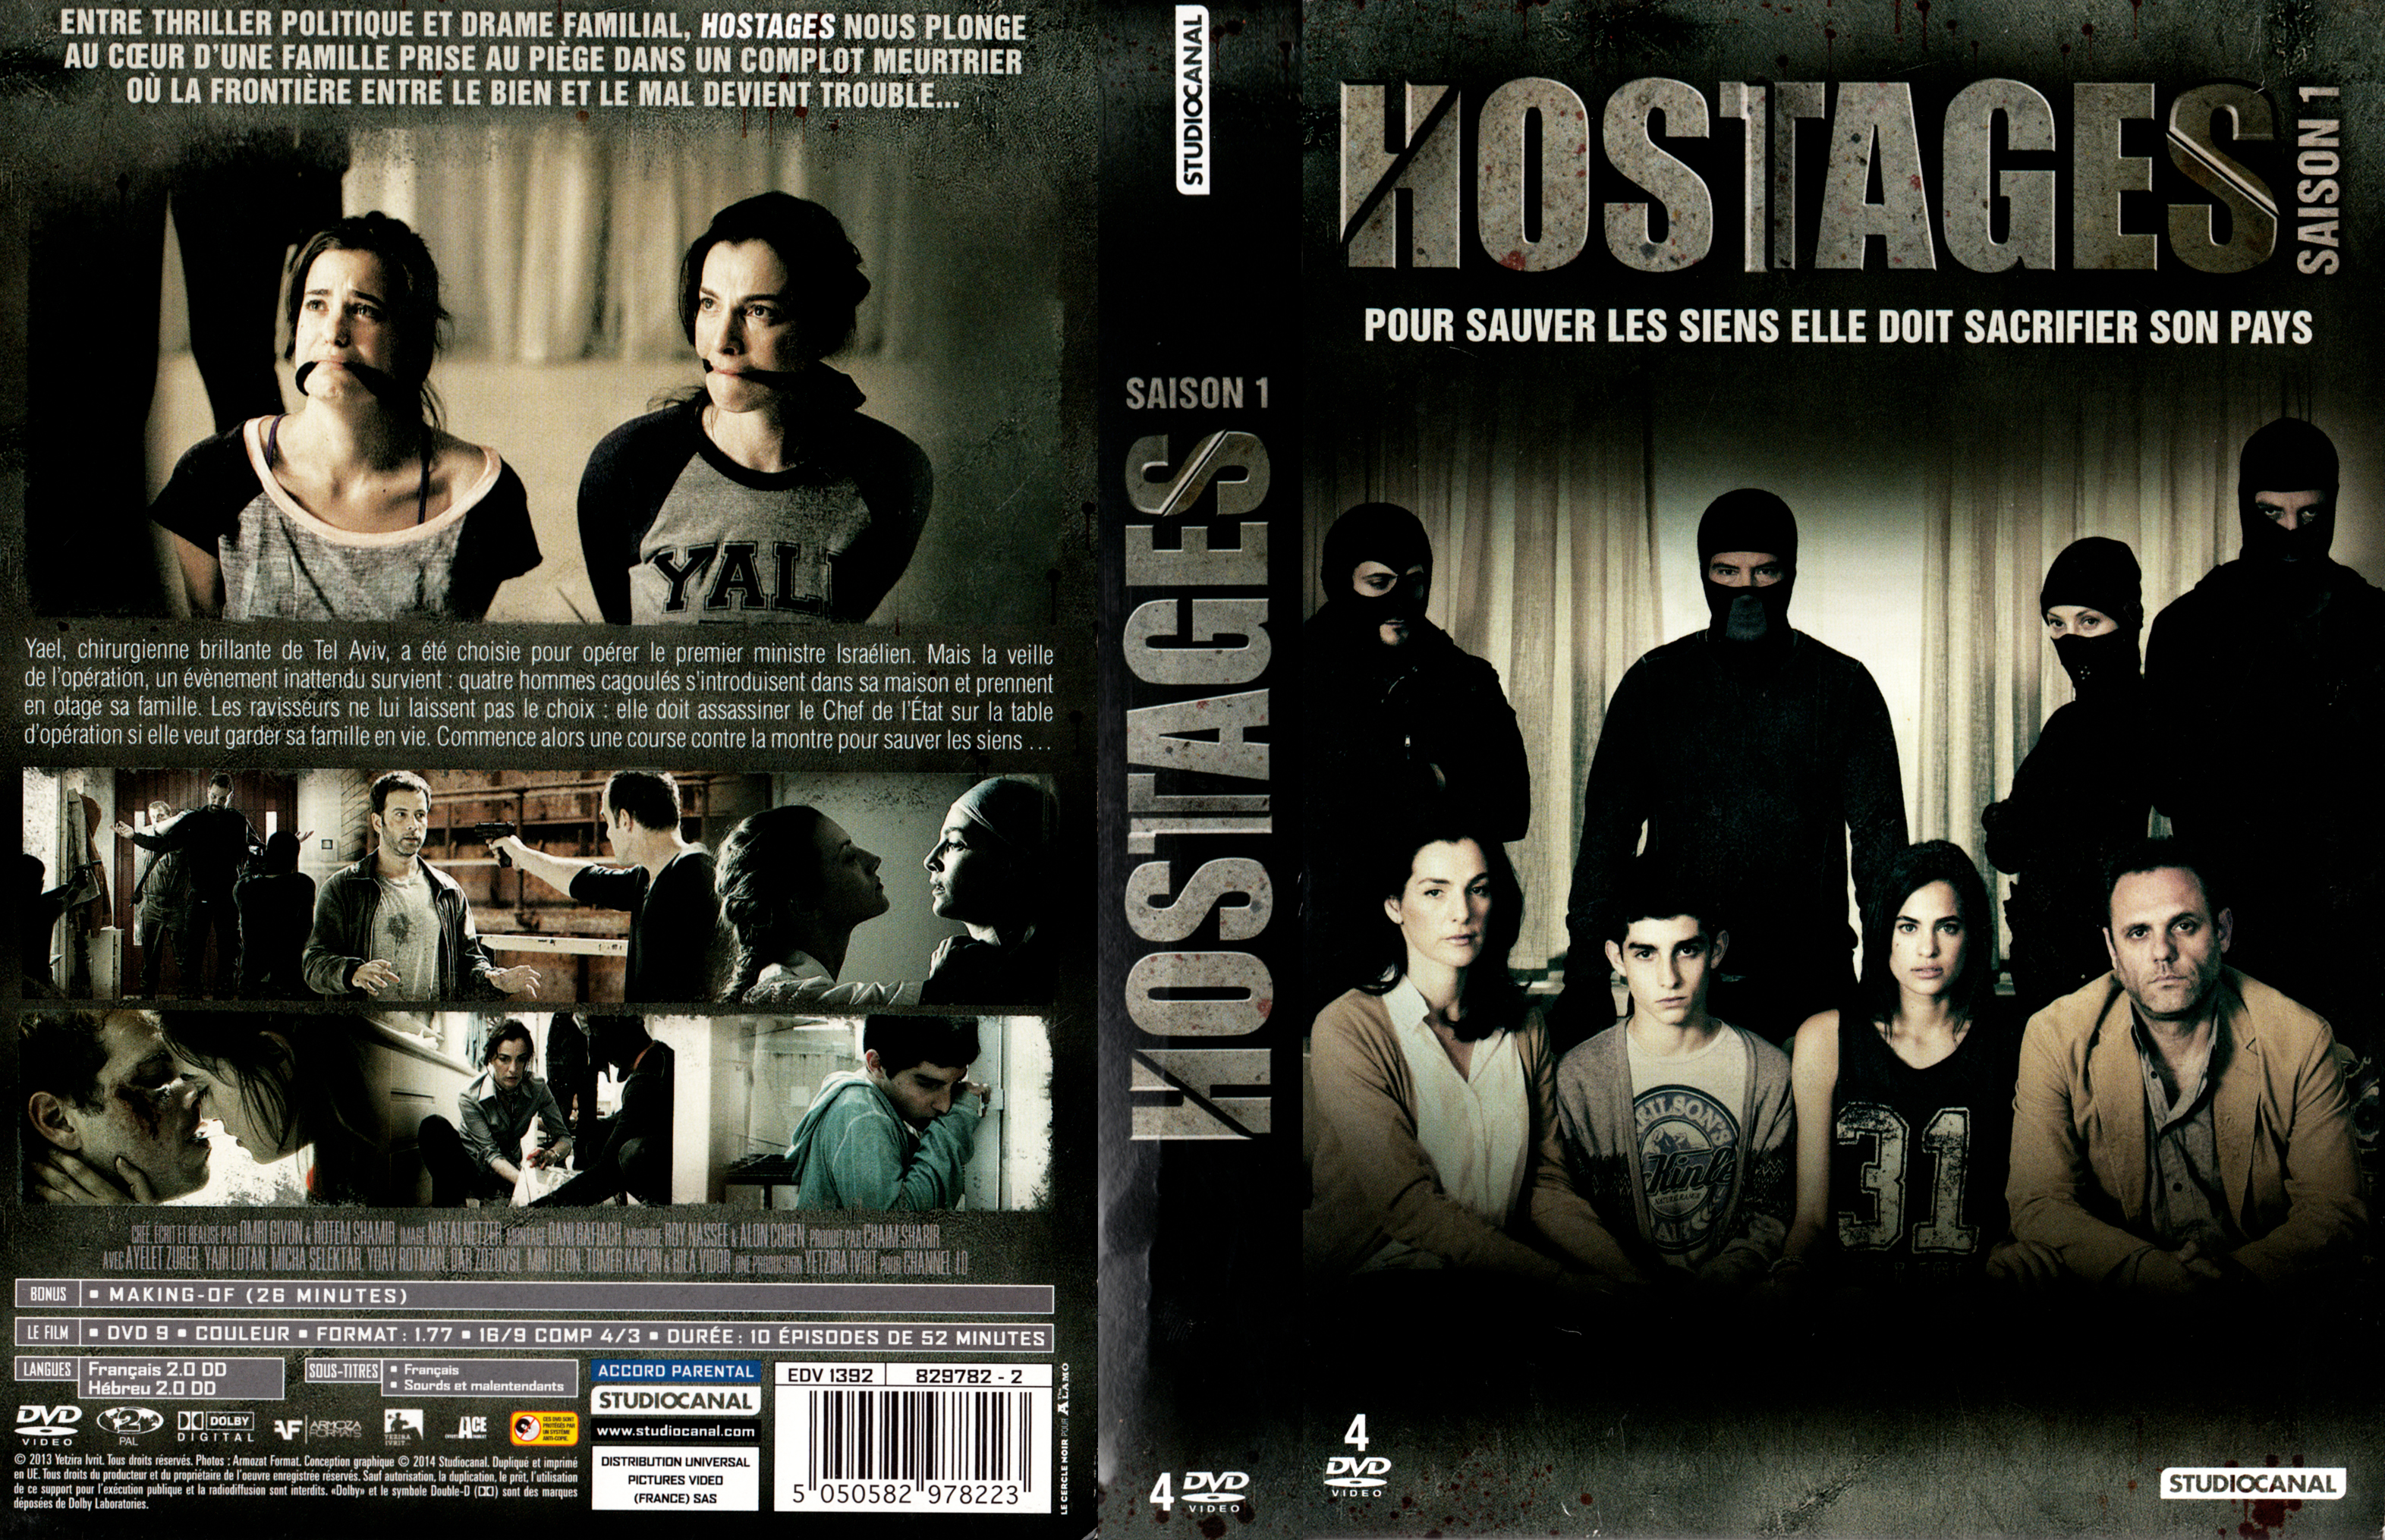 Jaquette DVD Hostages Saison 1 COFFRET